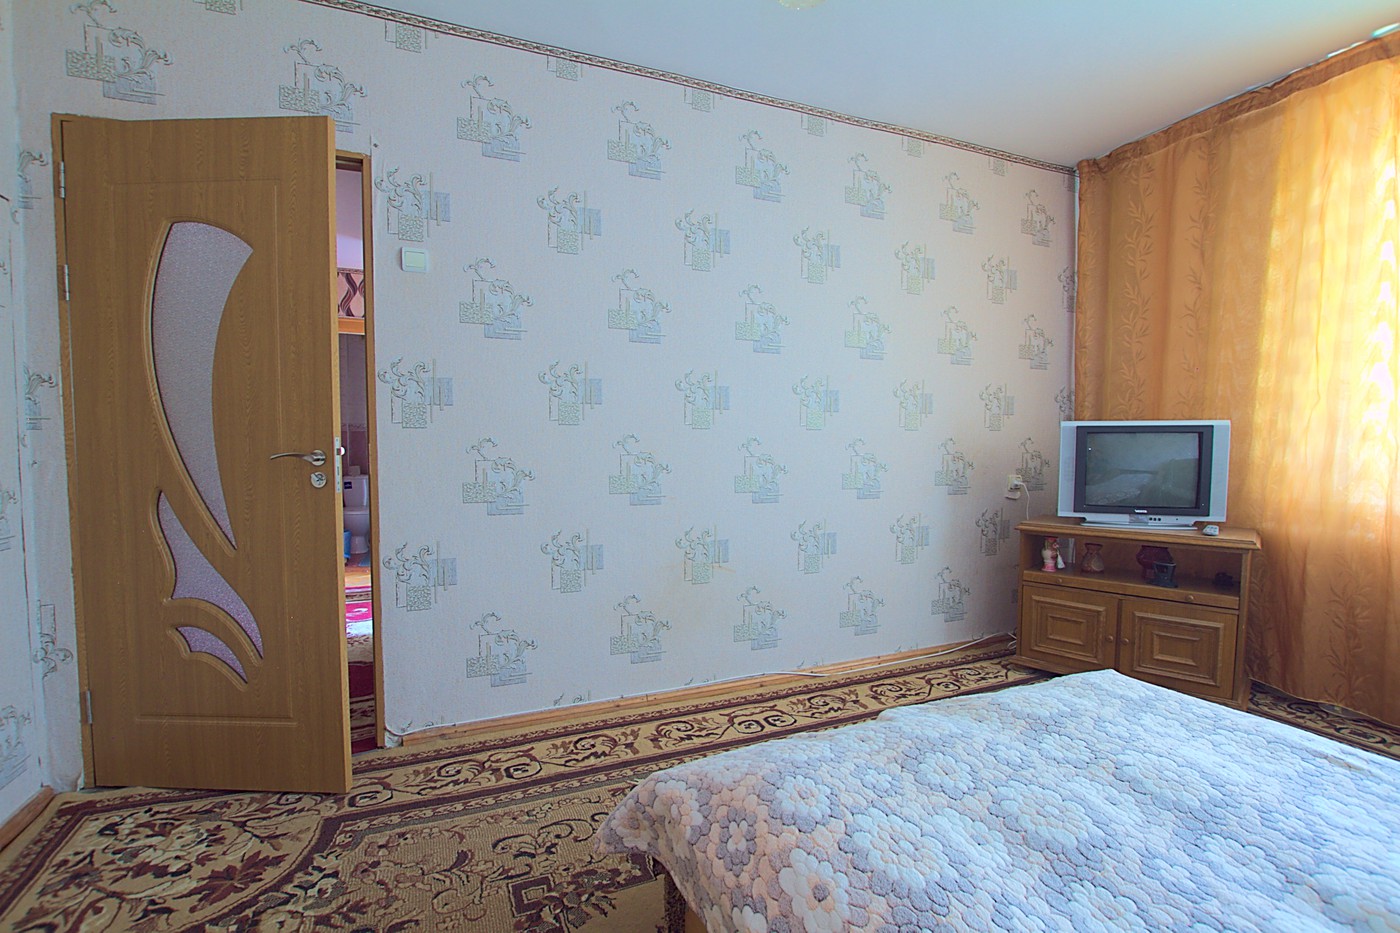 Chisinau, Riscani. Location pas cher près de McDonald: 2 pièces, 1 chambre, 48 m²